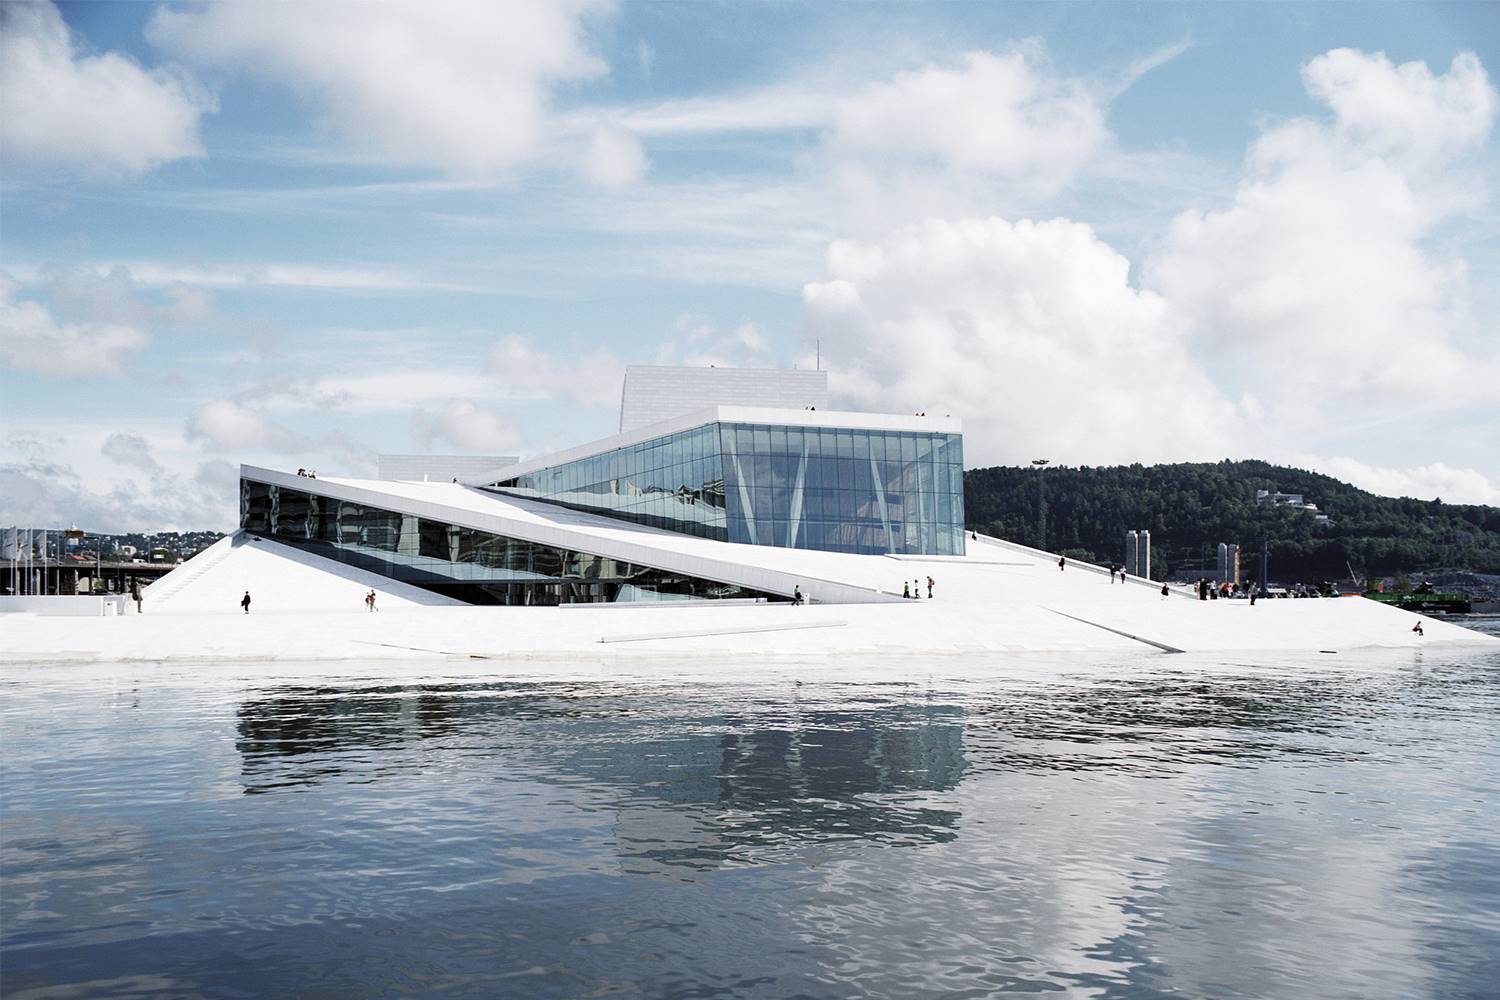 Edificio de la opera Oslo. [01] Edificio de la Ópera